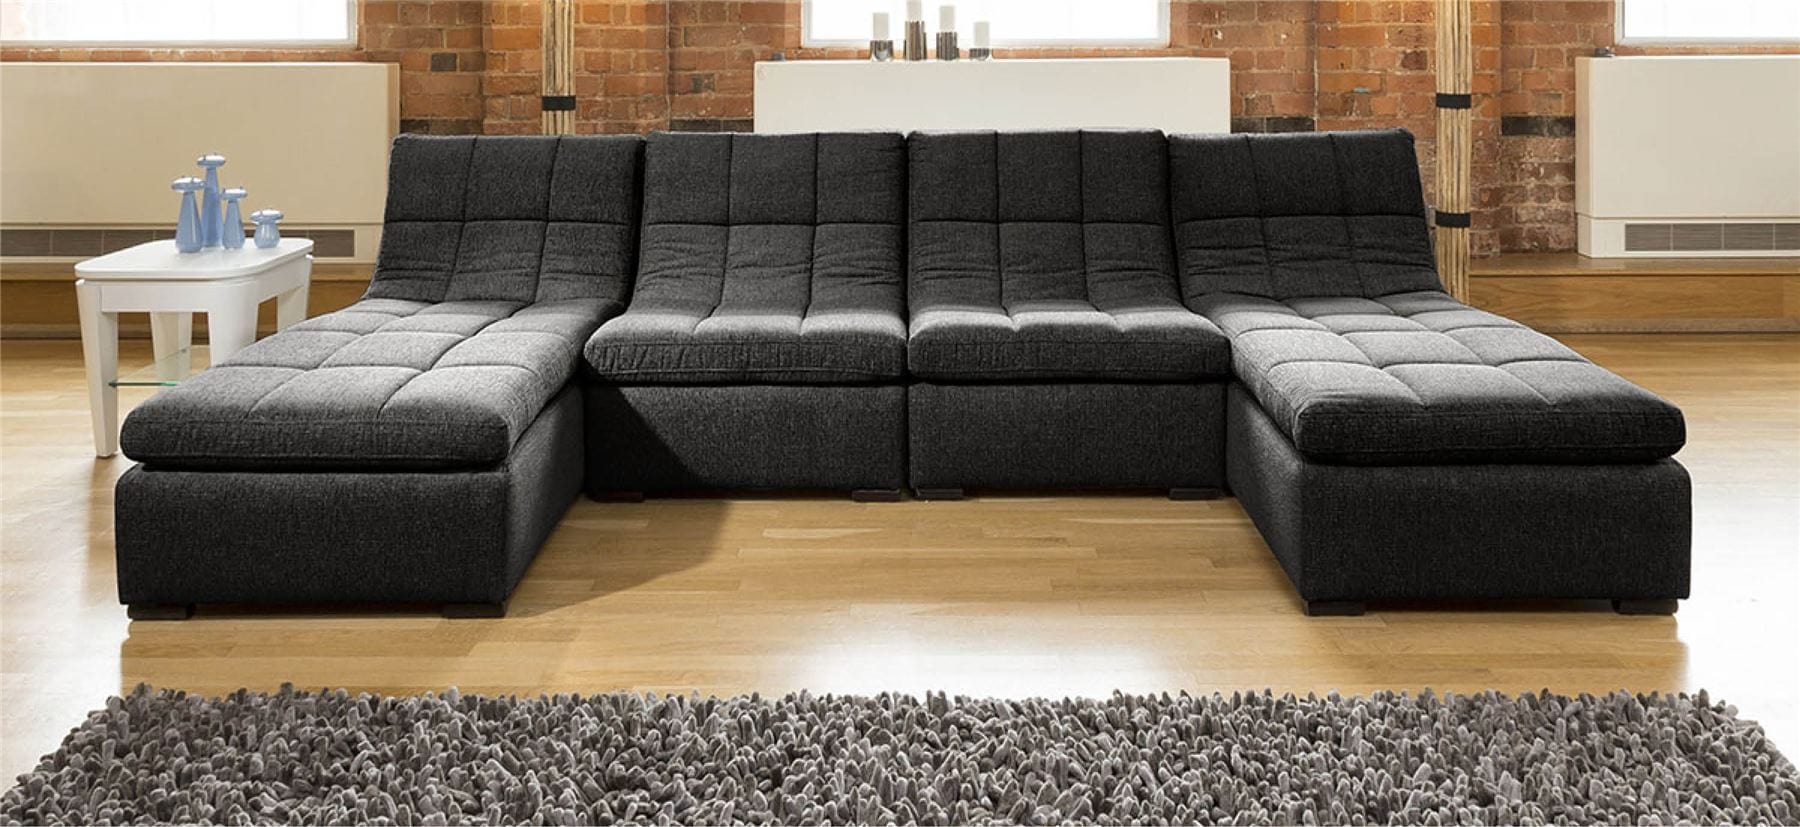 Quatropi Quatropi Designer Relax Range U Shaped Sofa Luxury 4 Seater U1